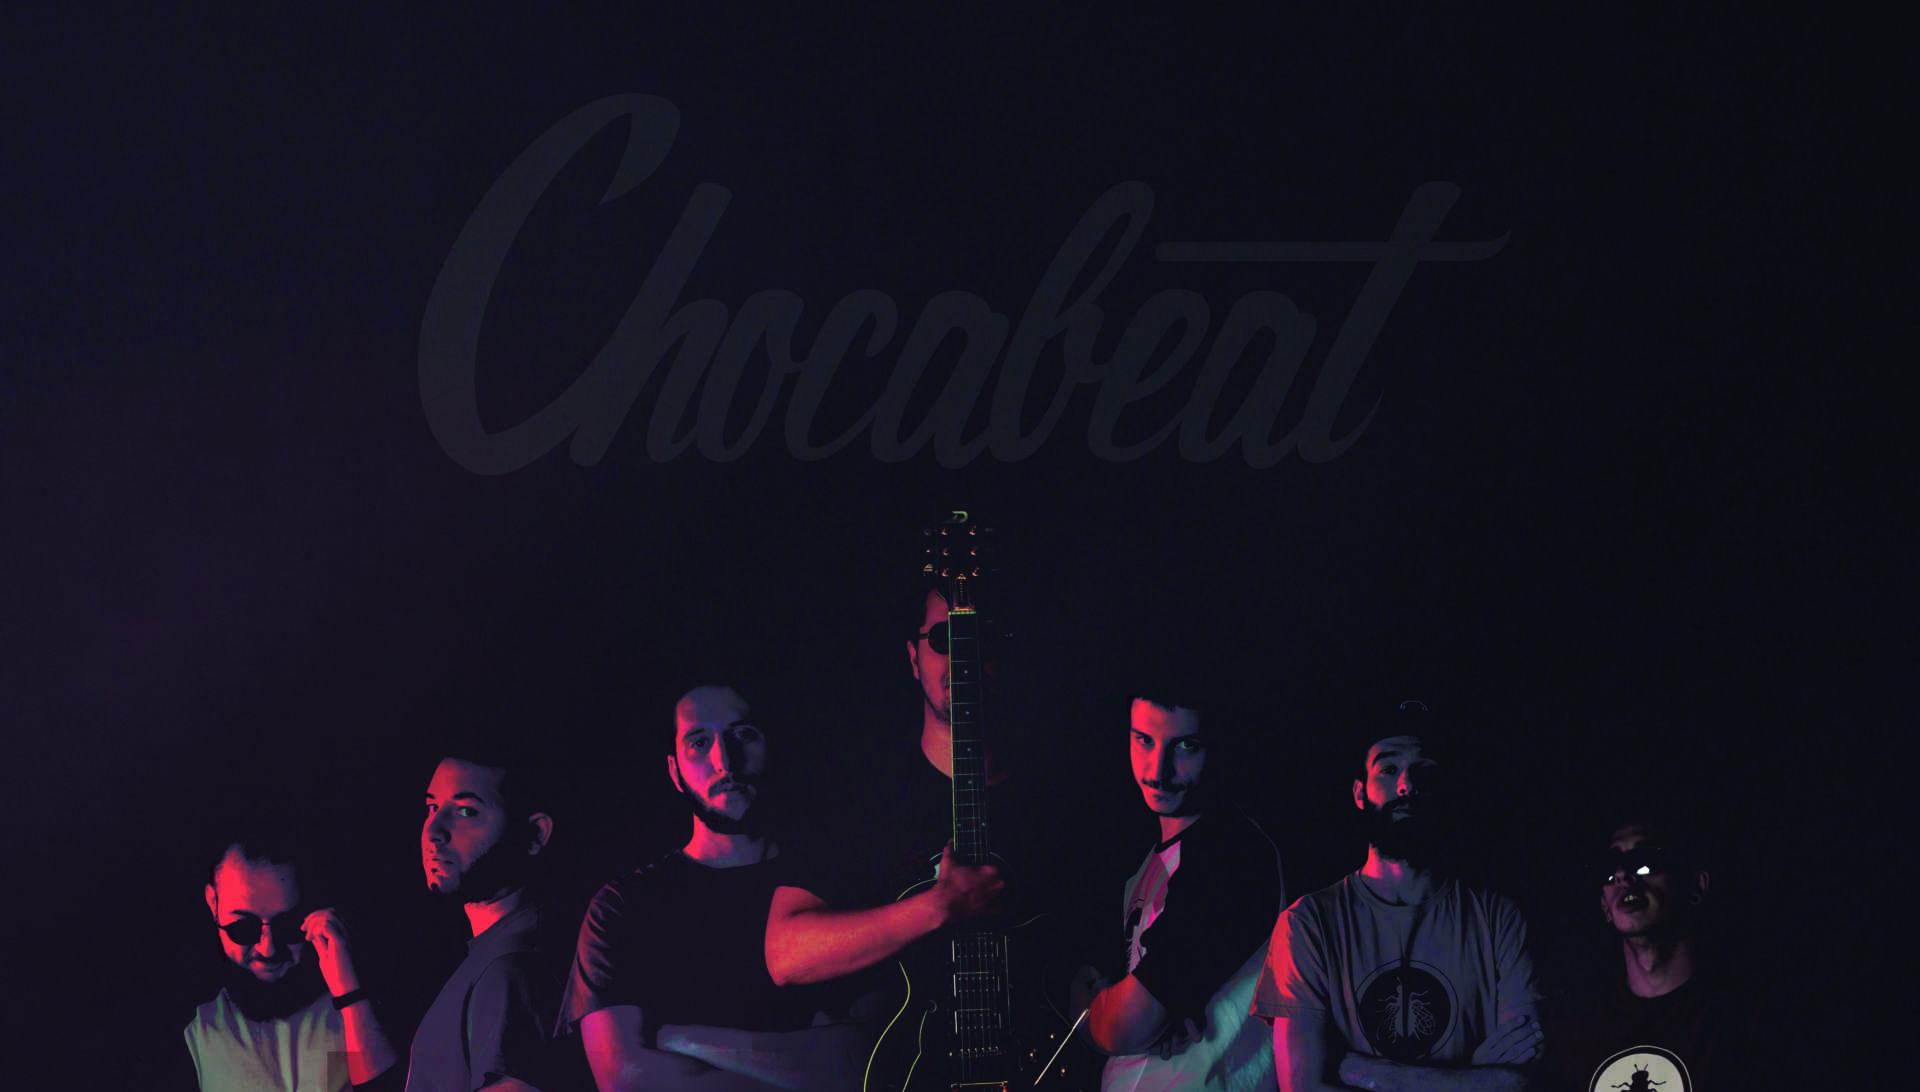 Chocabeat